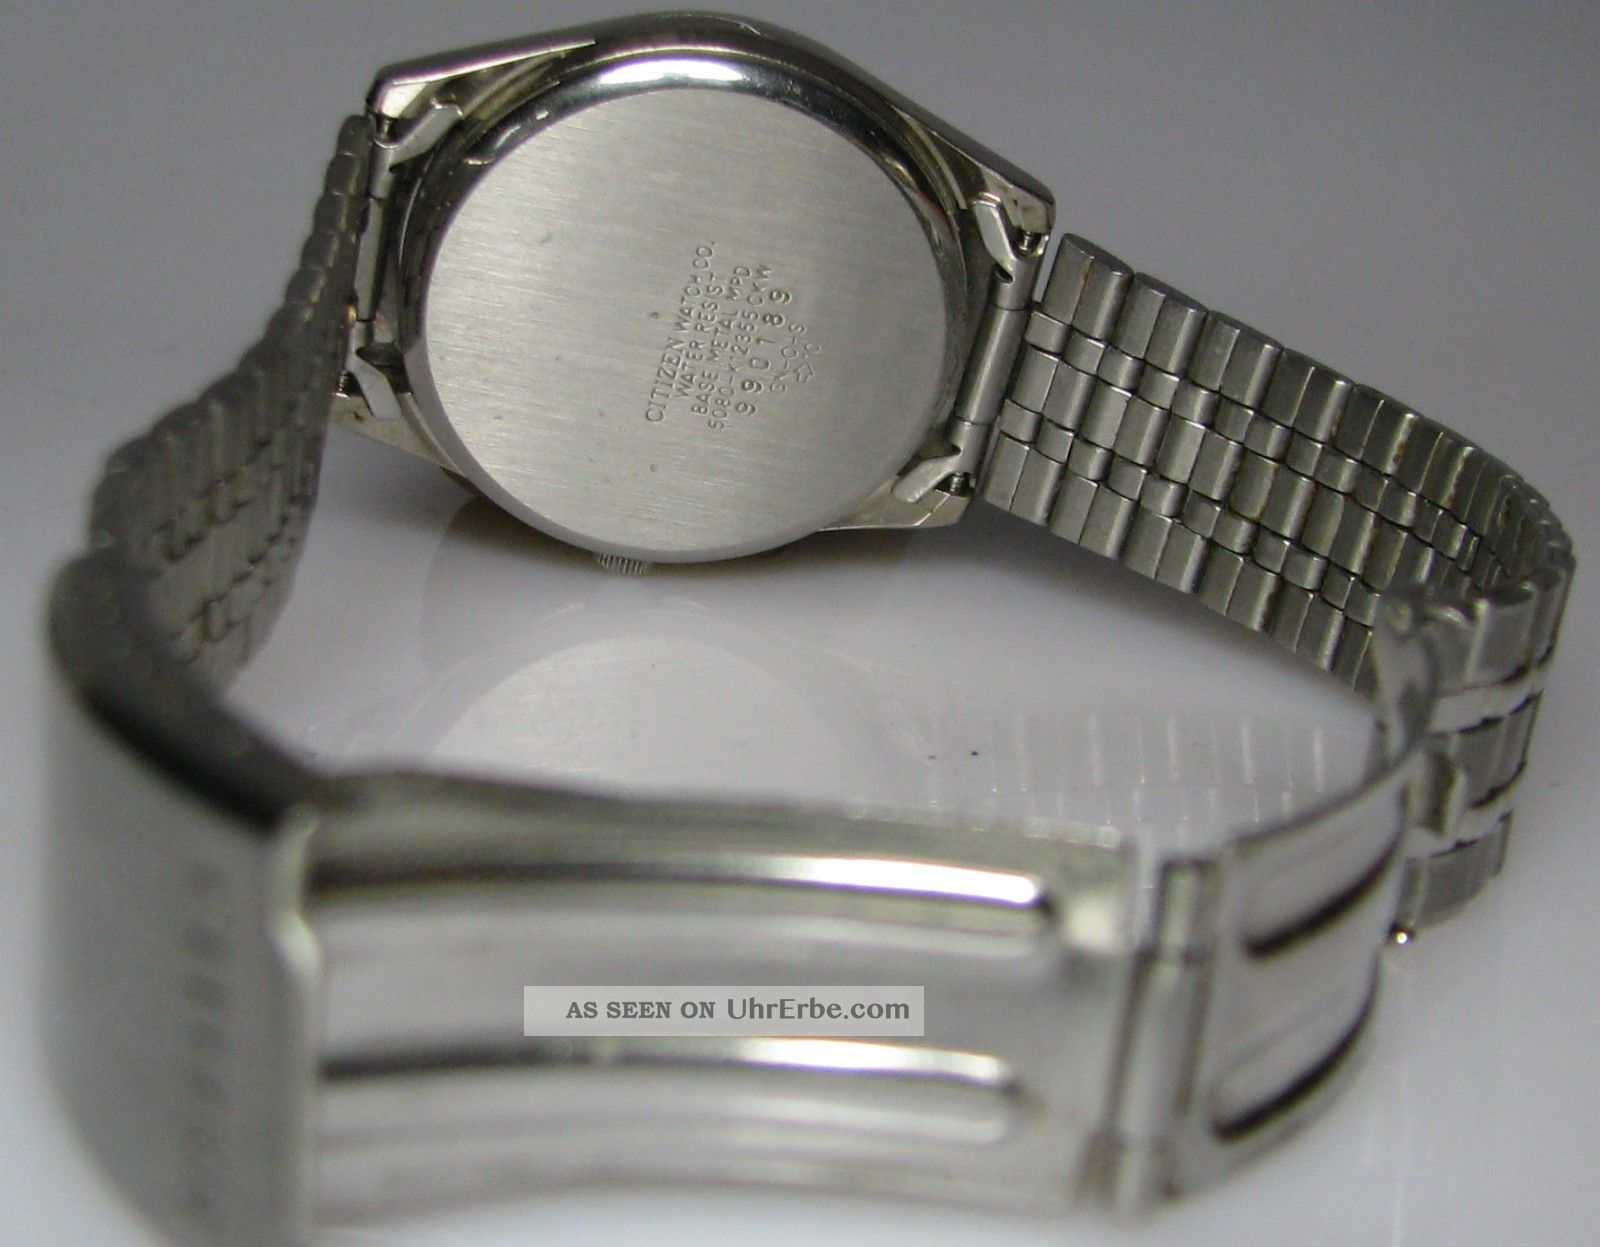 Cititzen Quartz Ecco - Drive Wr 50 Armbanduhr Mit Metall - Armband